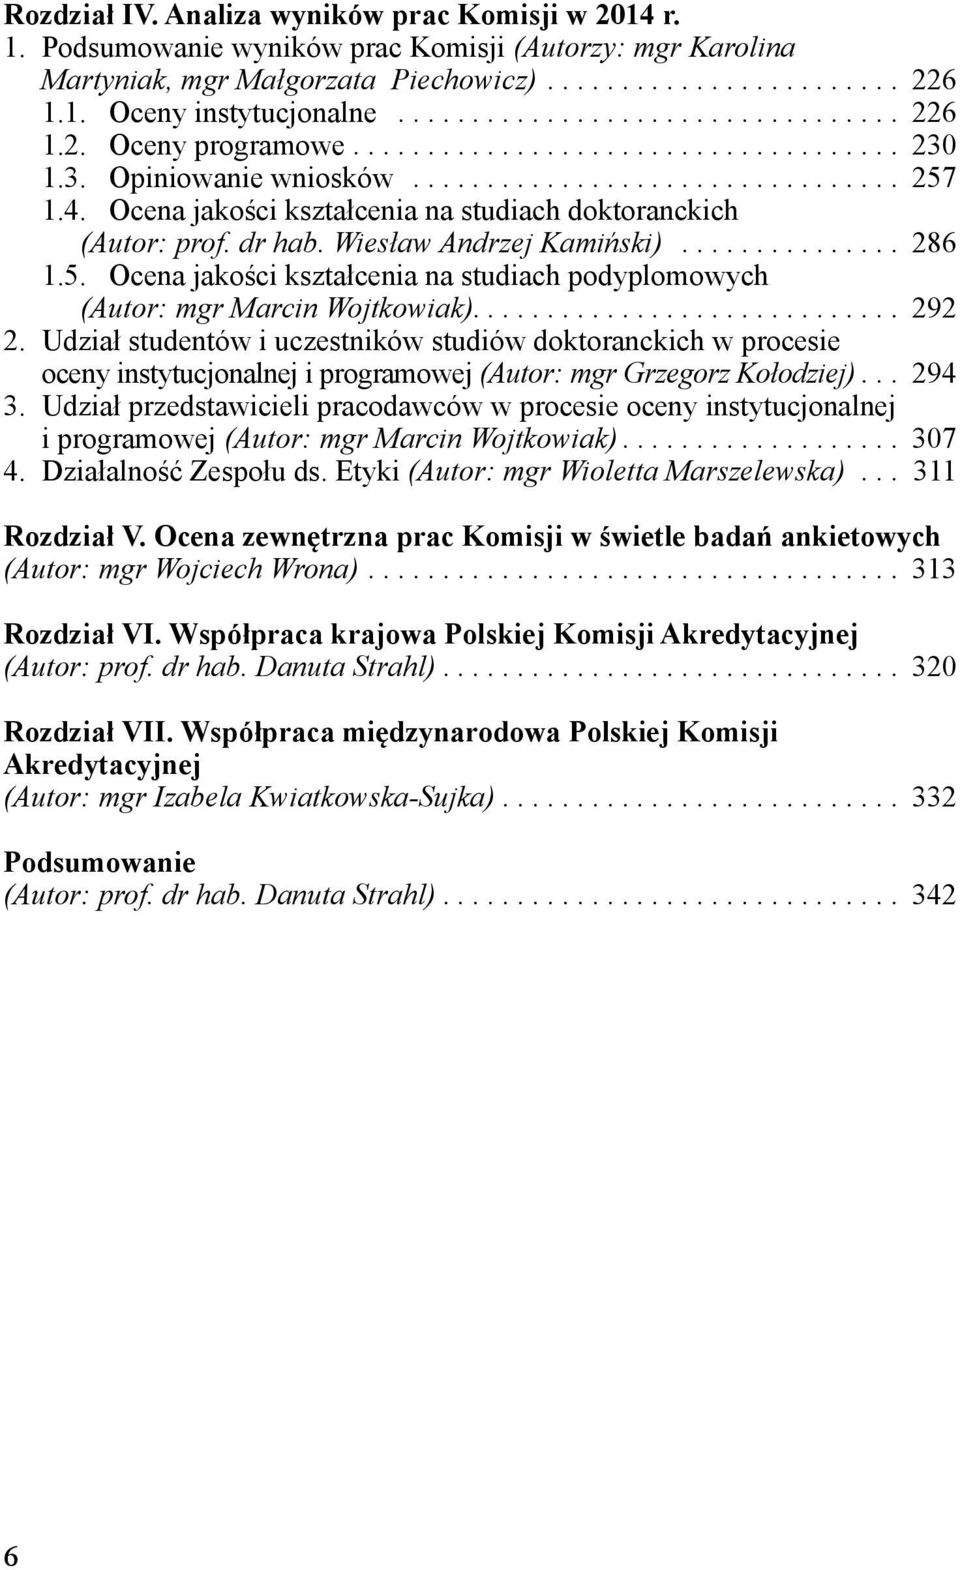 Ocena jakości kształcenia na studiach doktoranckich (Autor: prof. dr hab. Wiesław Andrzej Kamiński)............... 286.5.